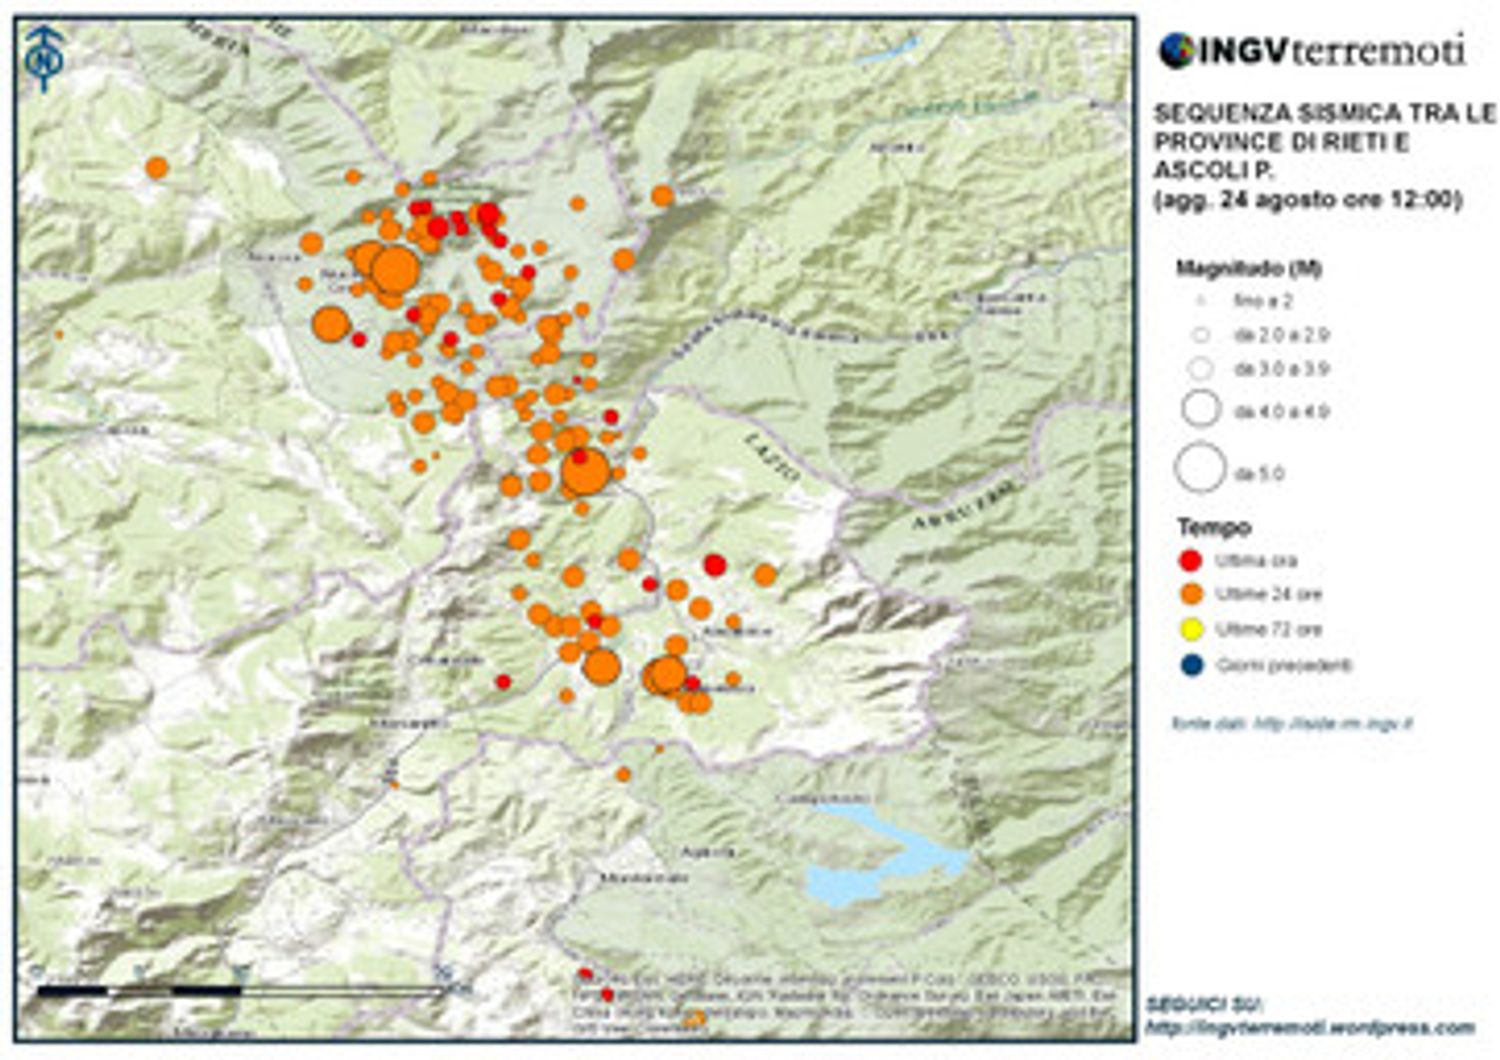 Eventi sismici localizzati dalle 03:36 alle 12.00 tra le province di Rieti, Perugia, Ascoli Piceno, L&rsquo;Aquila e Teramo (Ingv)&nbsp;